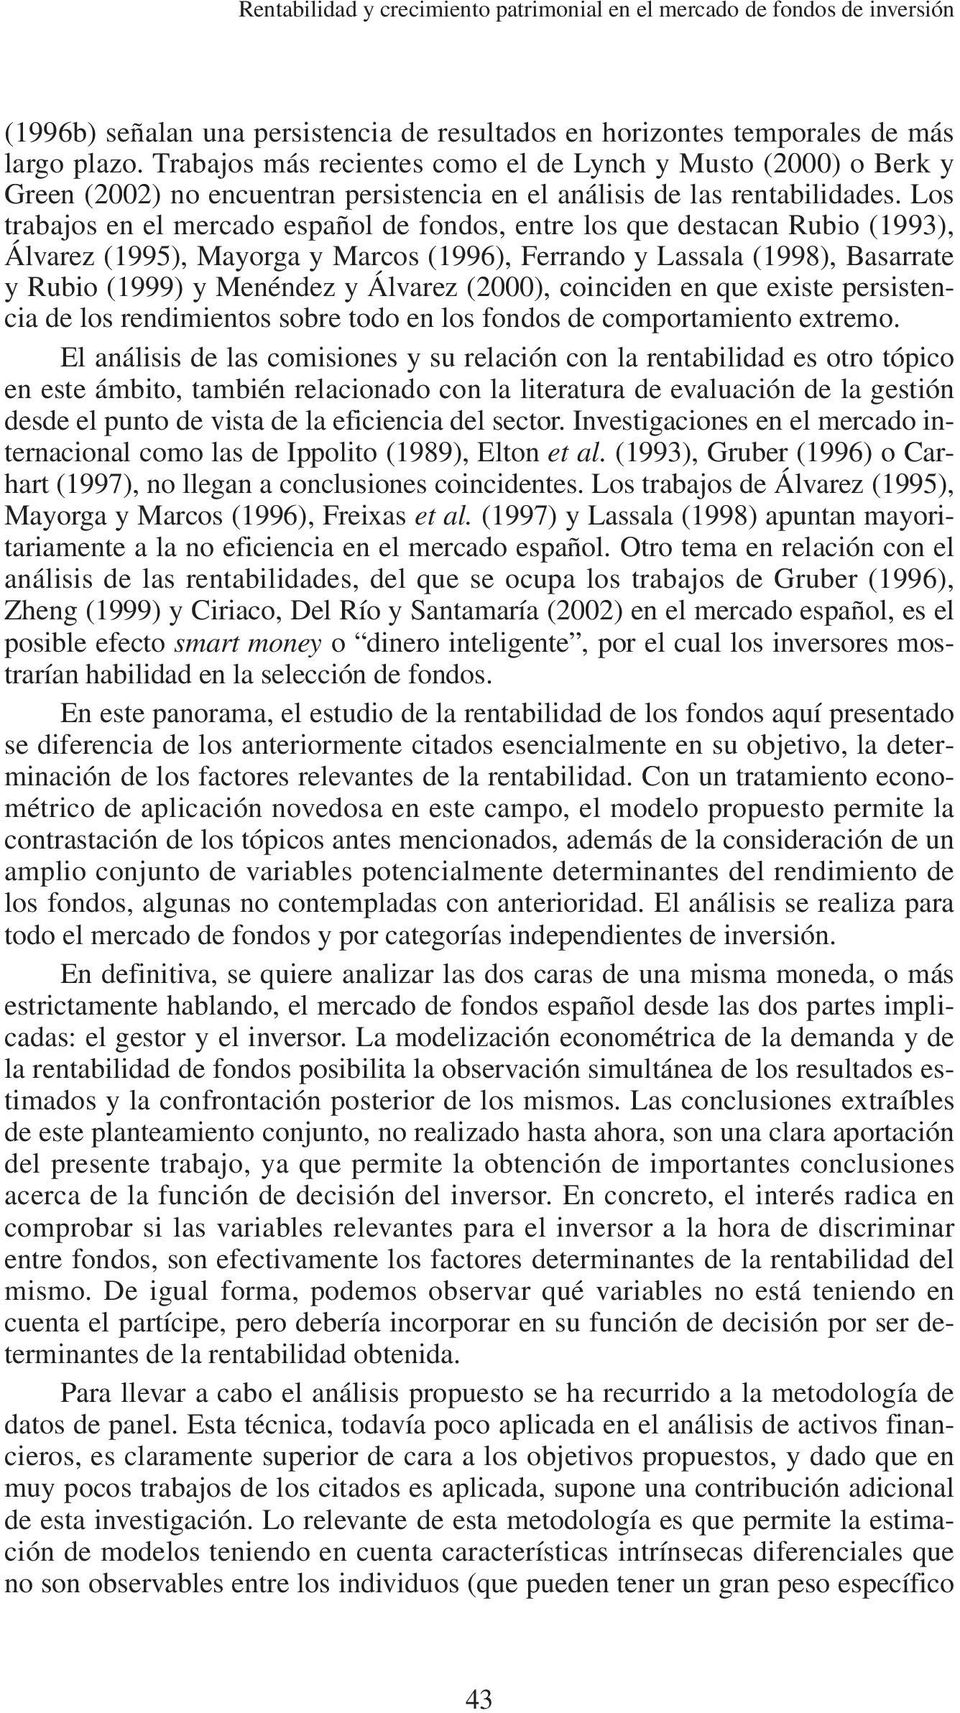 Los trabajos en el mercado español de fondos, entre los que destacan Rubio (1993), Álvarez (1995), Mayorga y Marcos (1996), Ferrando y Lassala (1998), Basarrate y Rubio (1999) y Menéndez y Álvarez